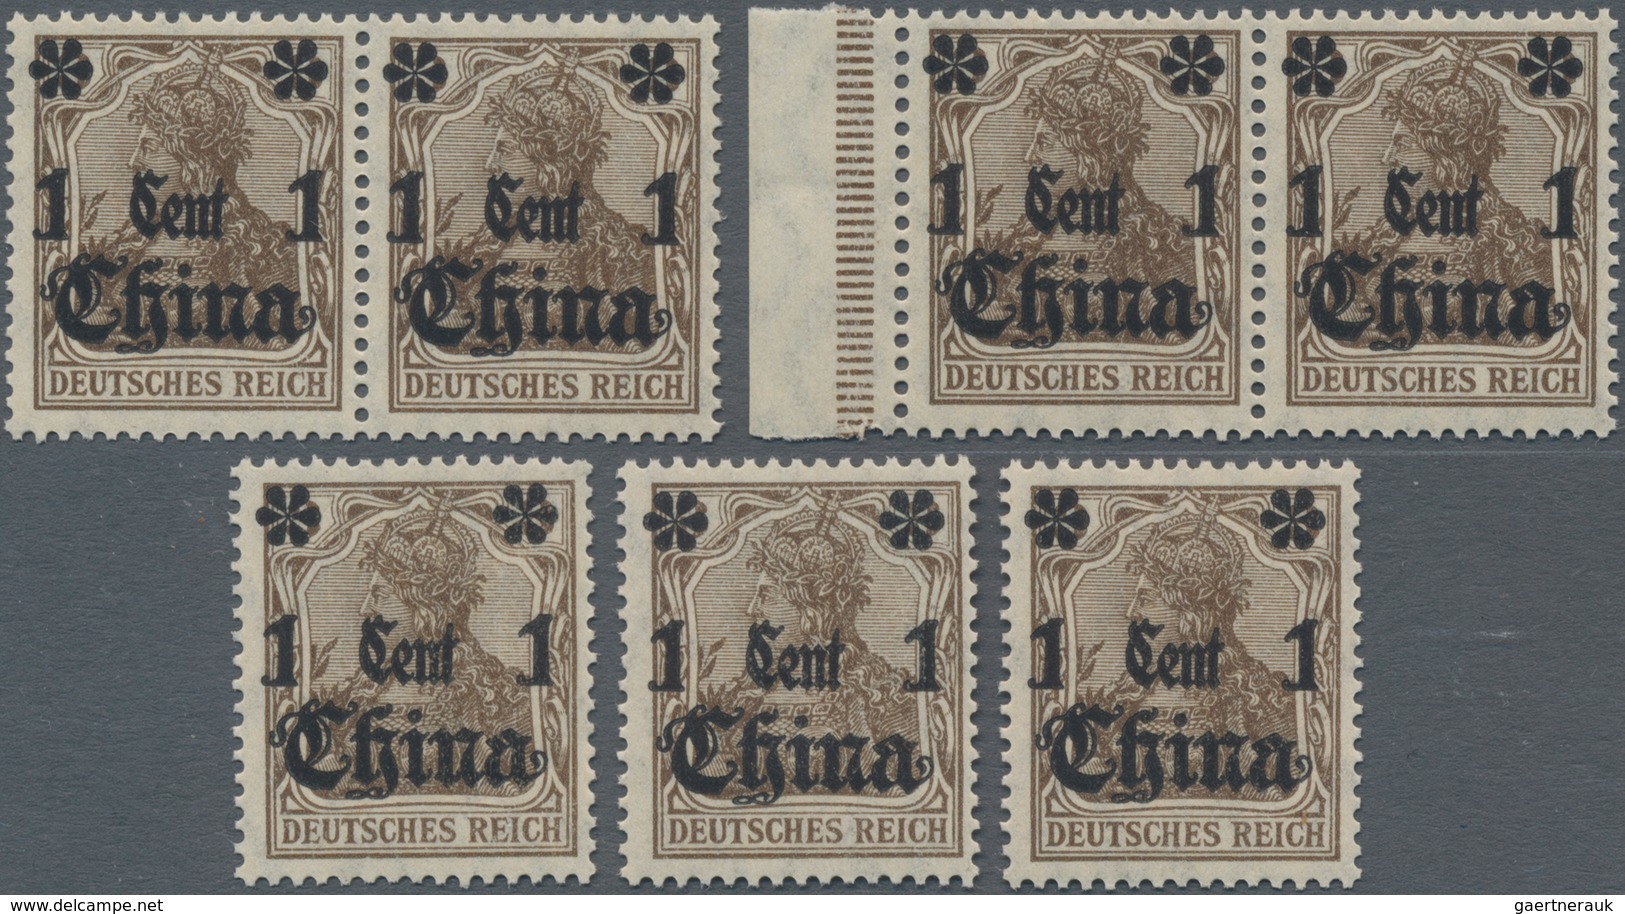 Deutsche Post In China: 1919, 1 Cent Auf 3 Pf., Stumpfer (rußiger) Aufdruck, 3 Einzelmarken Und Zwei - China (offices)